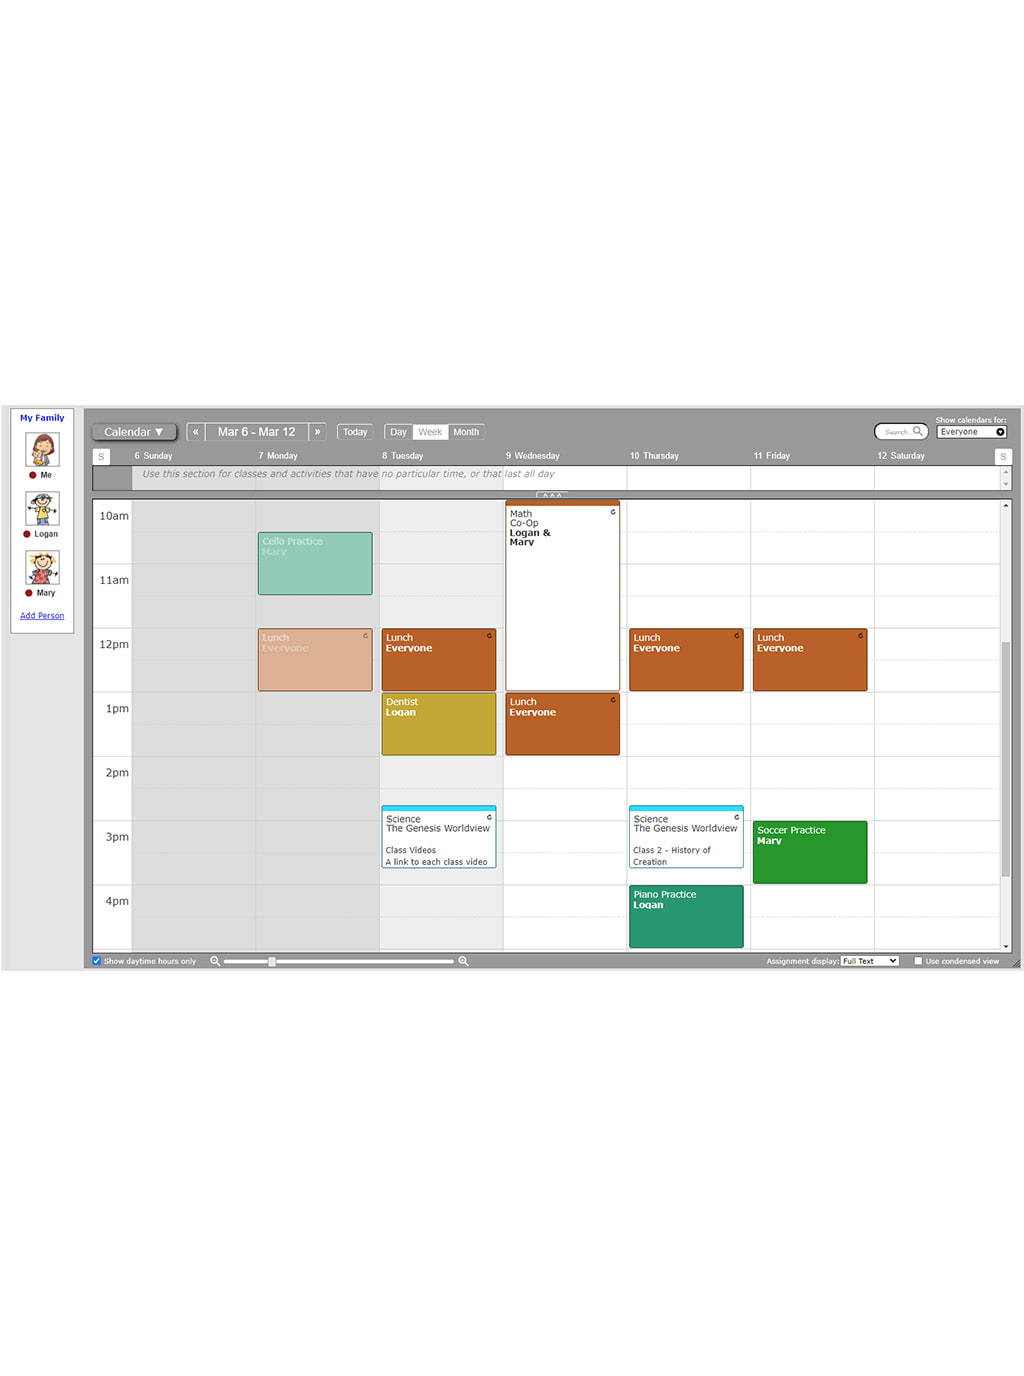 Homeschool biology lesson plan weekly calendar screenshot